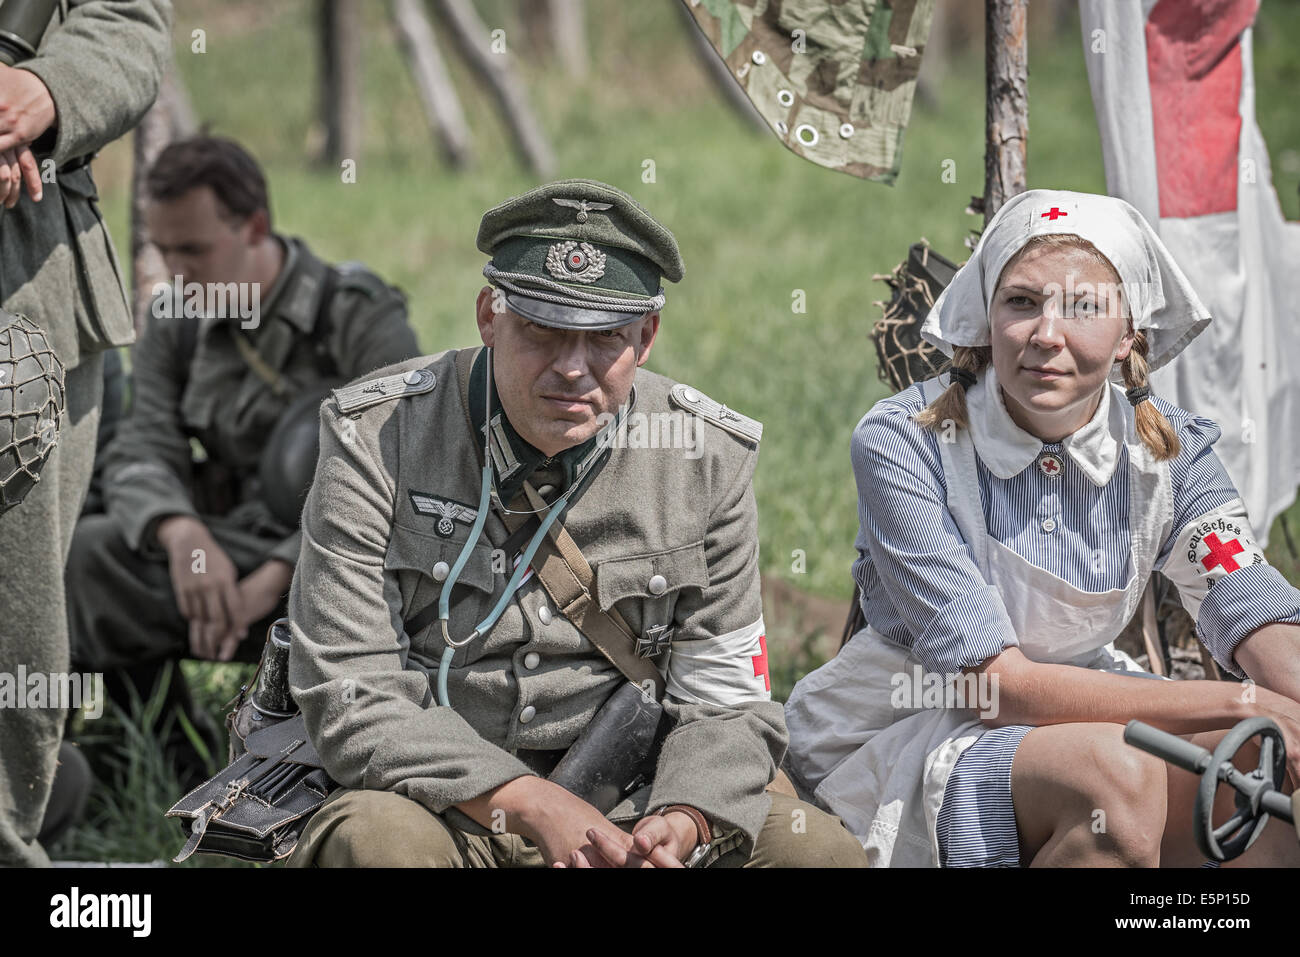 TEKOV, SLOVAQUIE - JUILLET 26,2014 : lieutenant allemand et d'une infirmière sur une pause lors de la Seconde Guerre mondiale reconstitution se bat en Slovaquie Banque D'Images